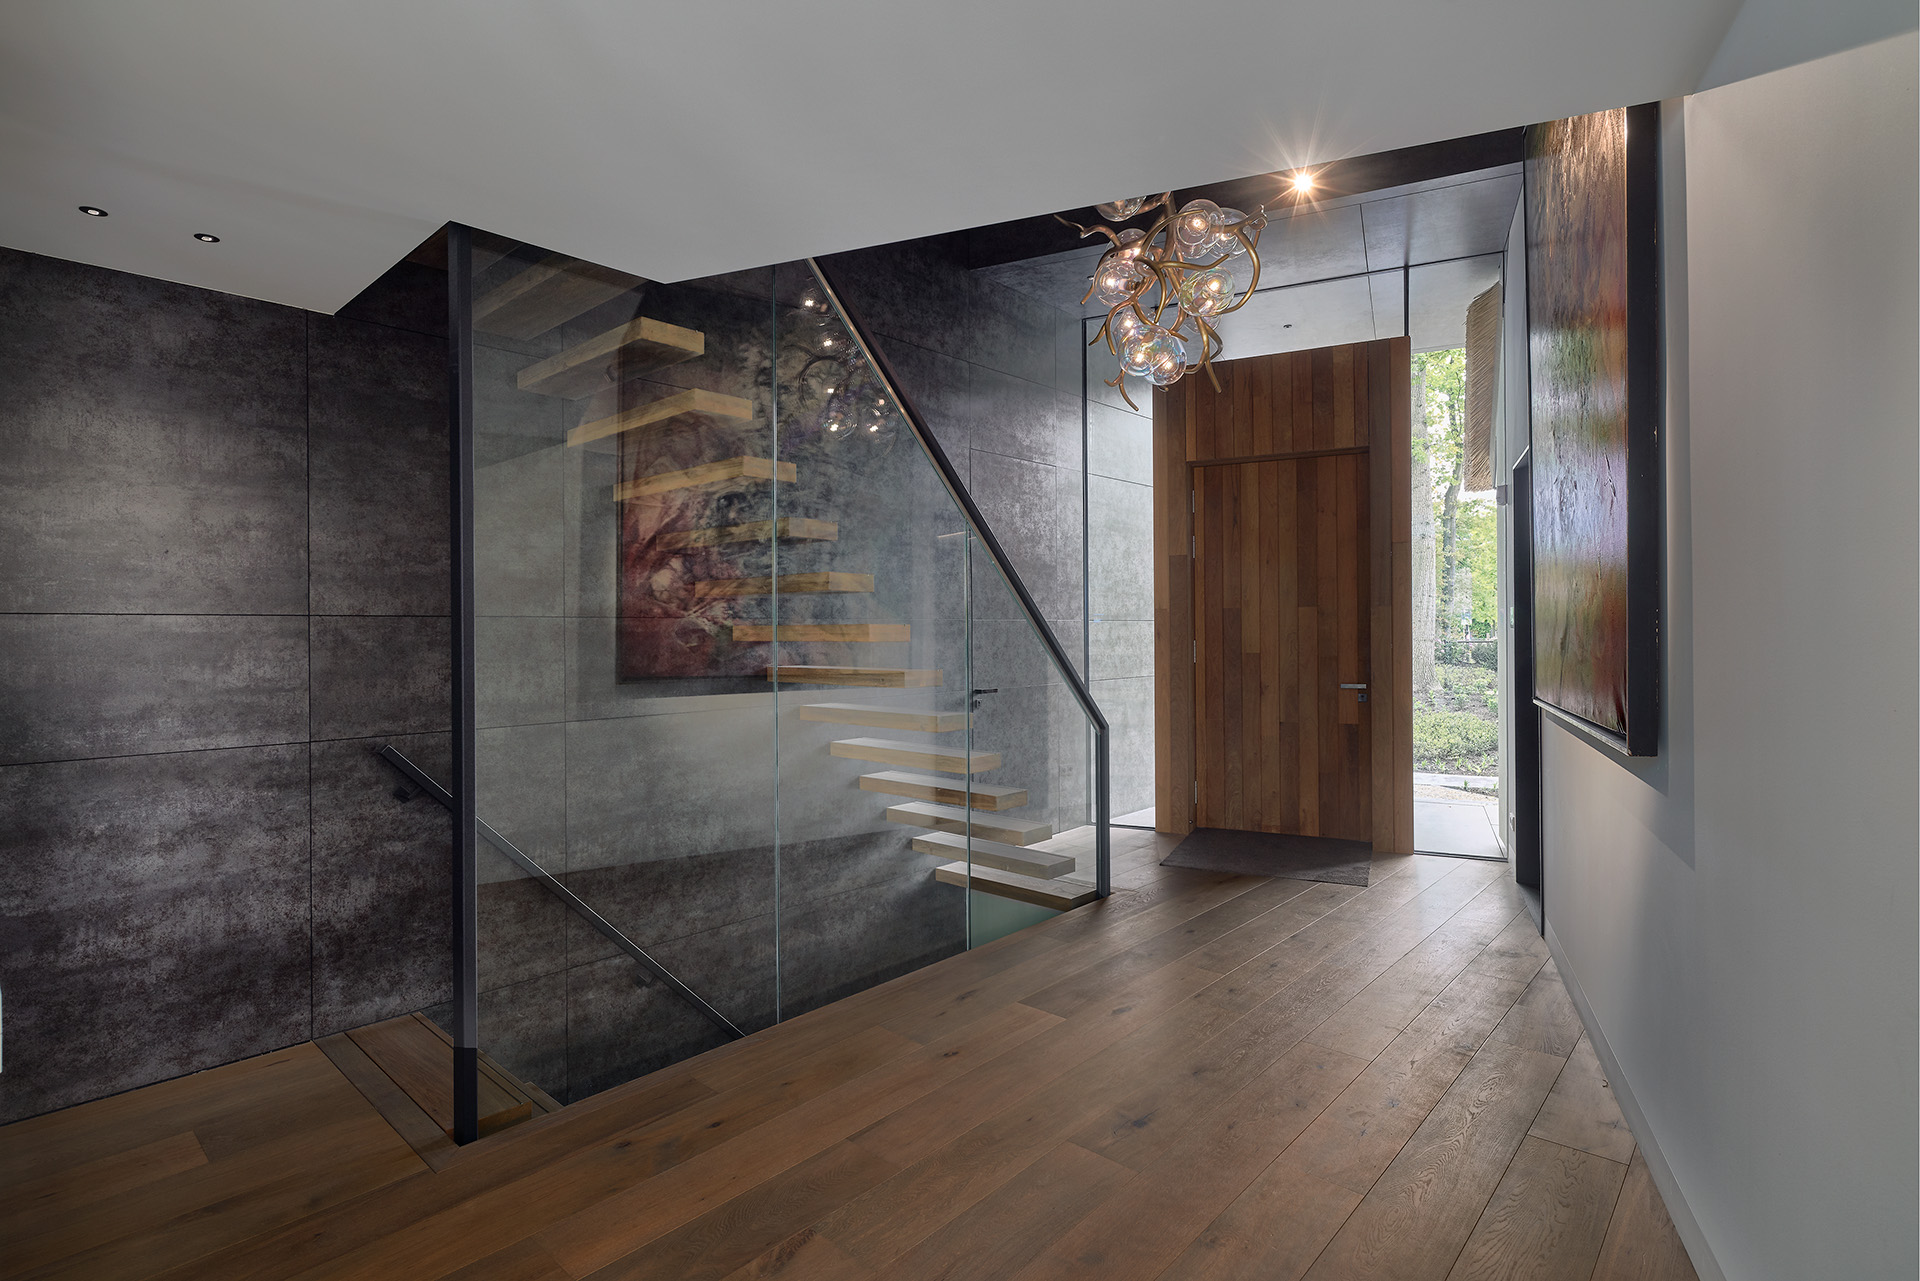 Luxury interior design villa with modern staircase by Emyko